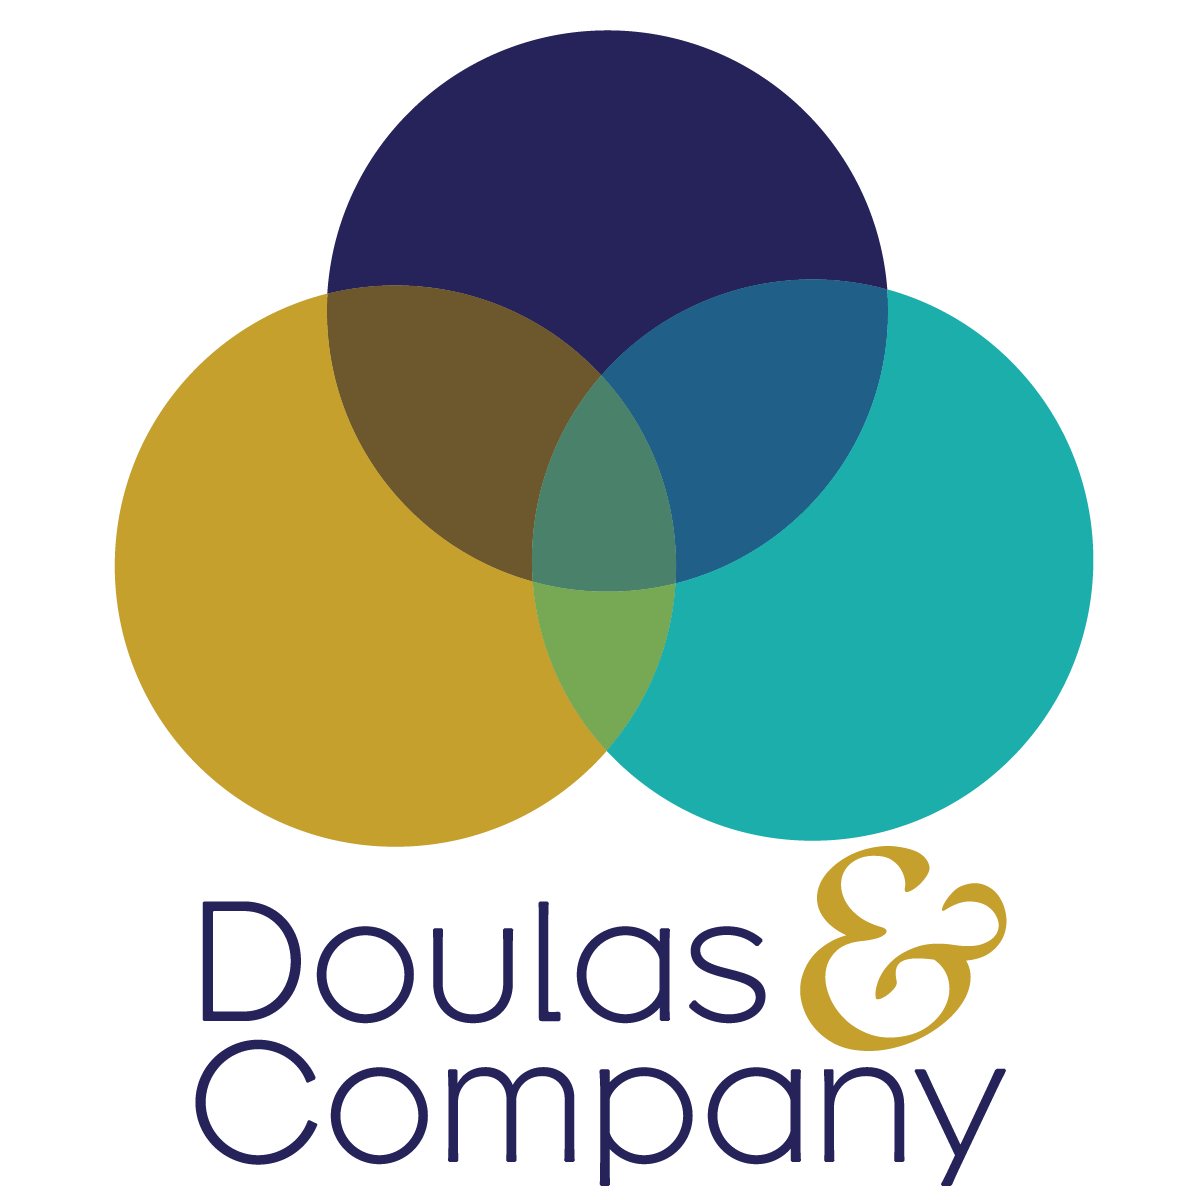 Doulas & Company